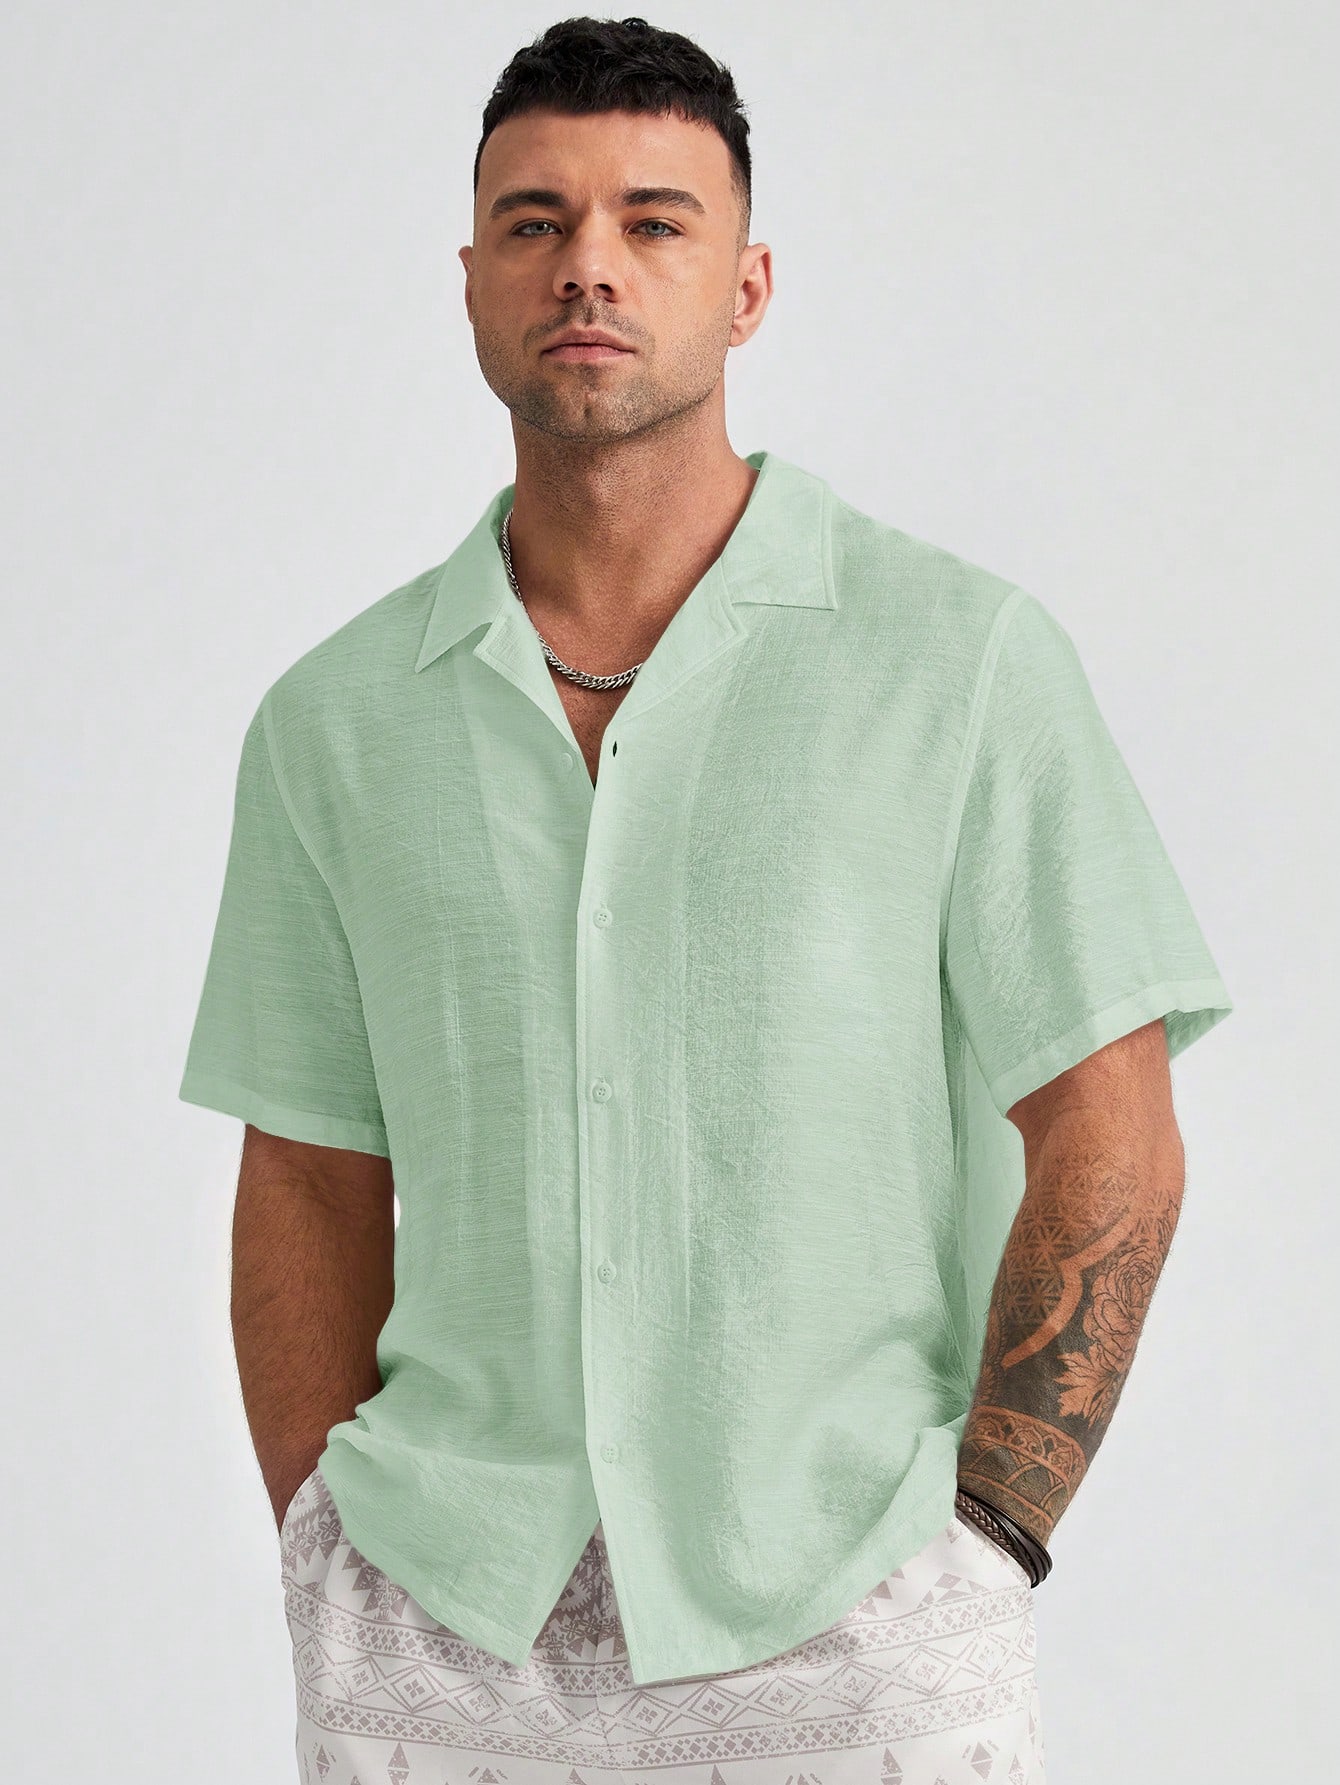 цена Manfinity Homme Мужская однотонная тканая рубашка больших размеров с коротким рукавом больших размеров, зеленый